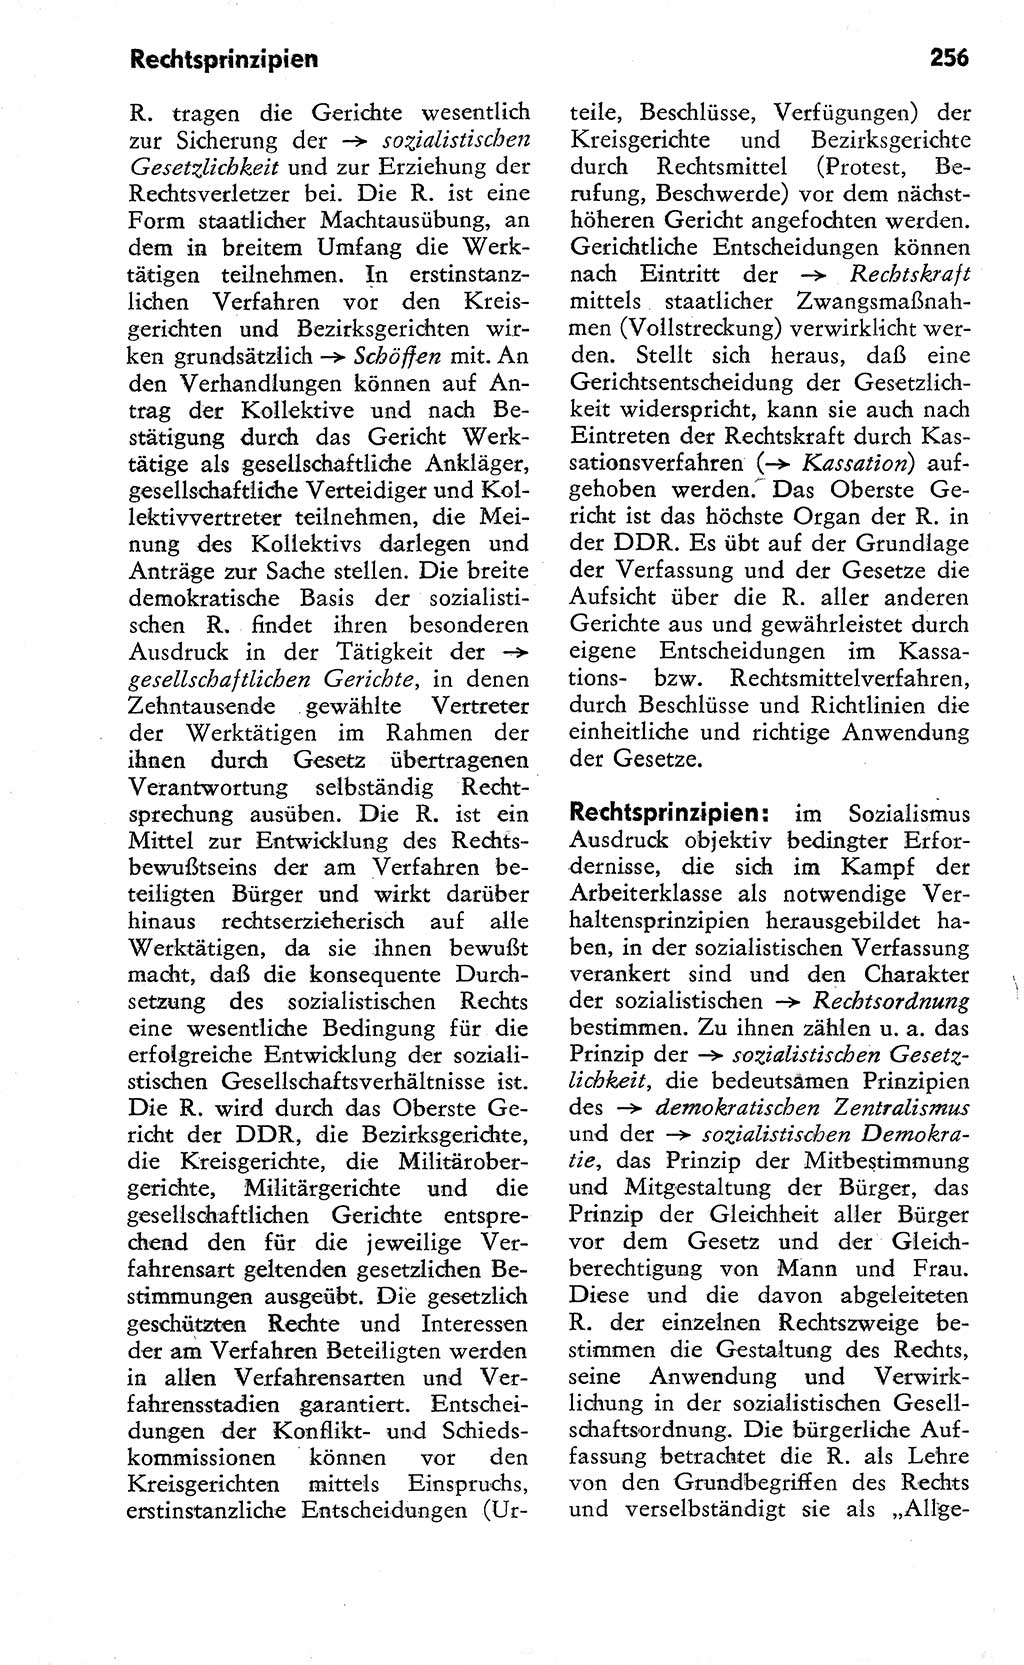 Wörterbuch zum sozialistischen Staat [Deutsche Demokratische Republik (DDR)] 1974, Seite 256 (Wb. soz. St. DDR 1974, S. 256)